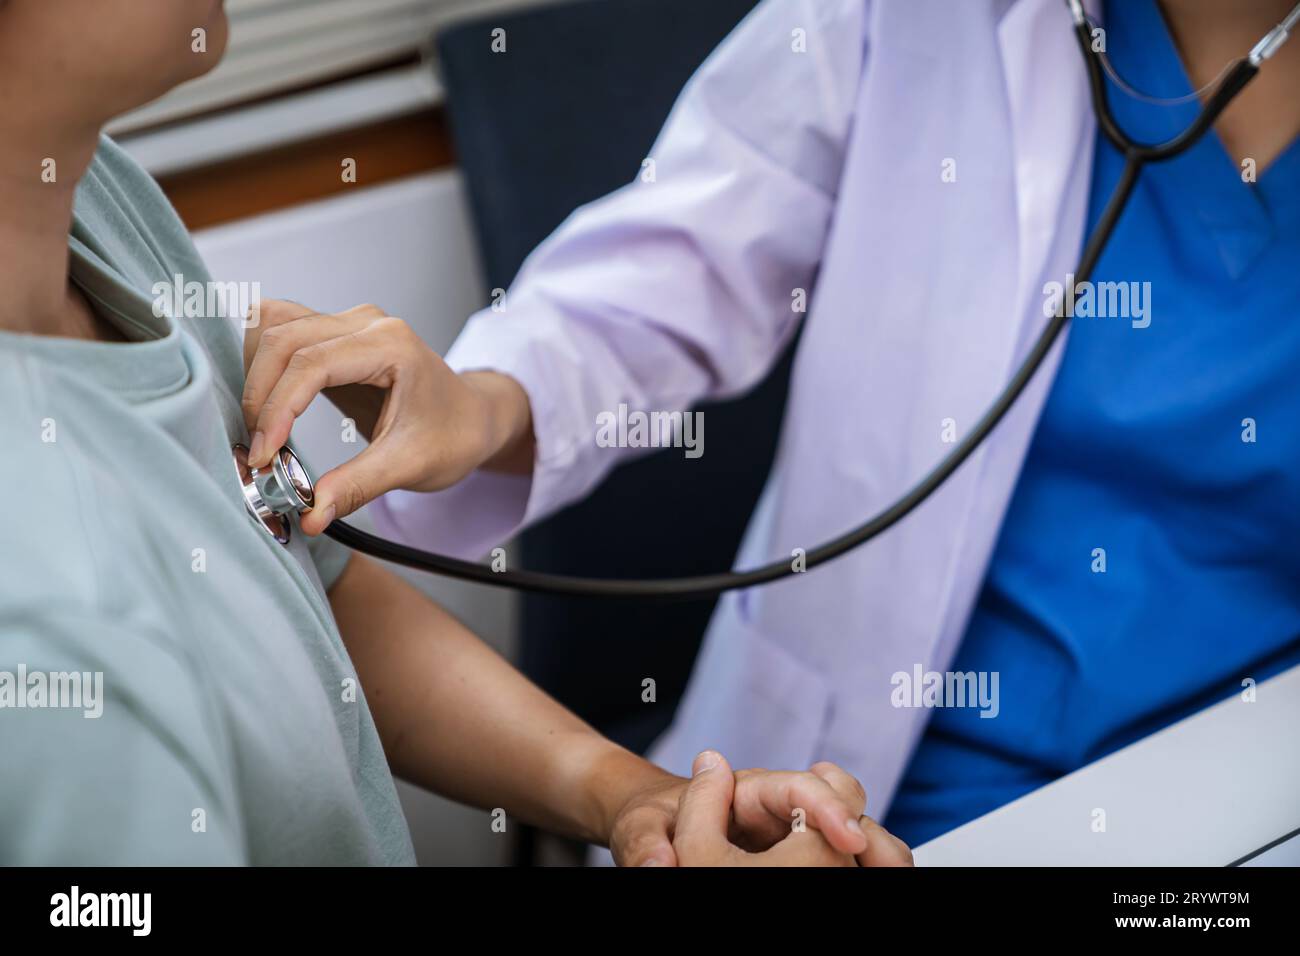 Medico sanitario. Medico professionista in bianco uniforme camice intervista intervista paziente rassicurante il suo paziente maschio Foto Stock